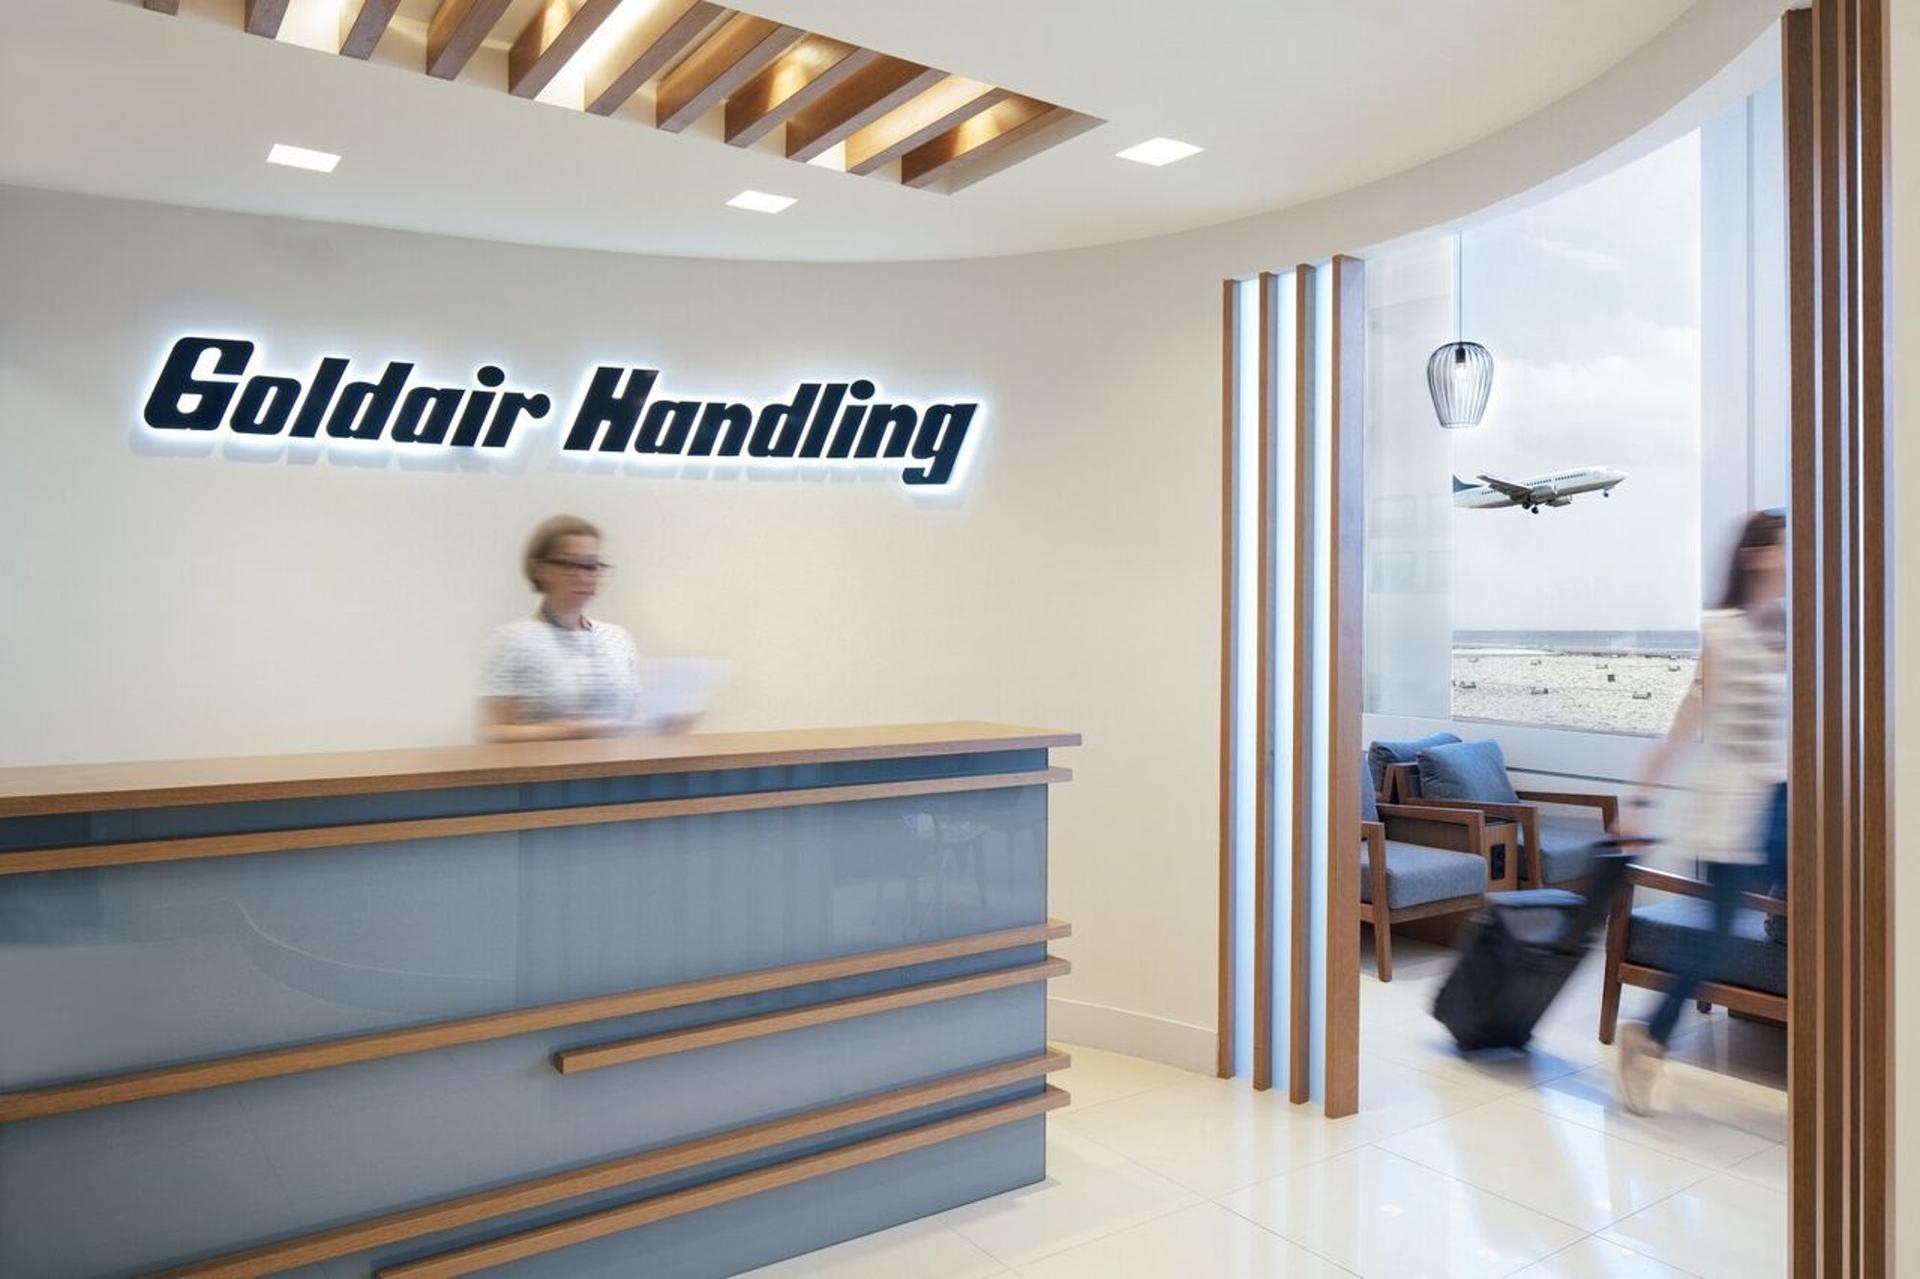 Goldair Handling Lounge image 6 of 7